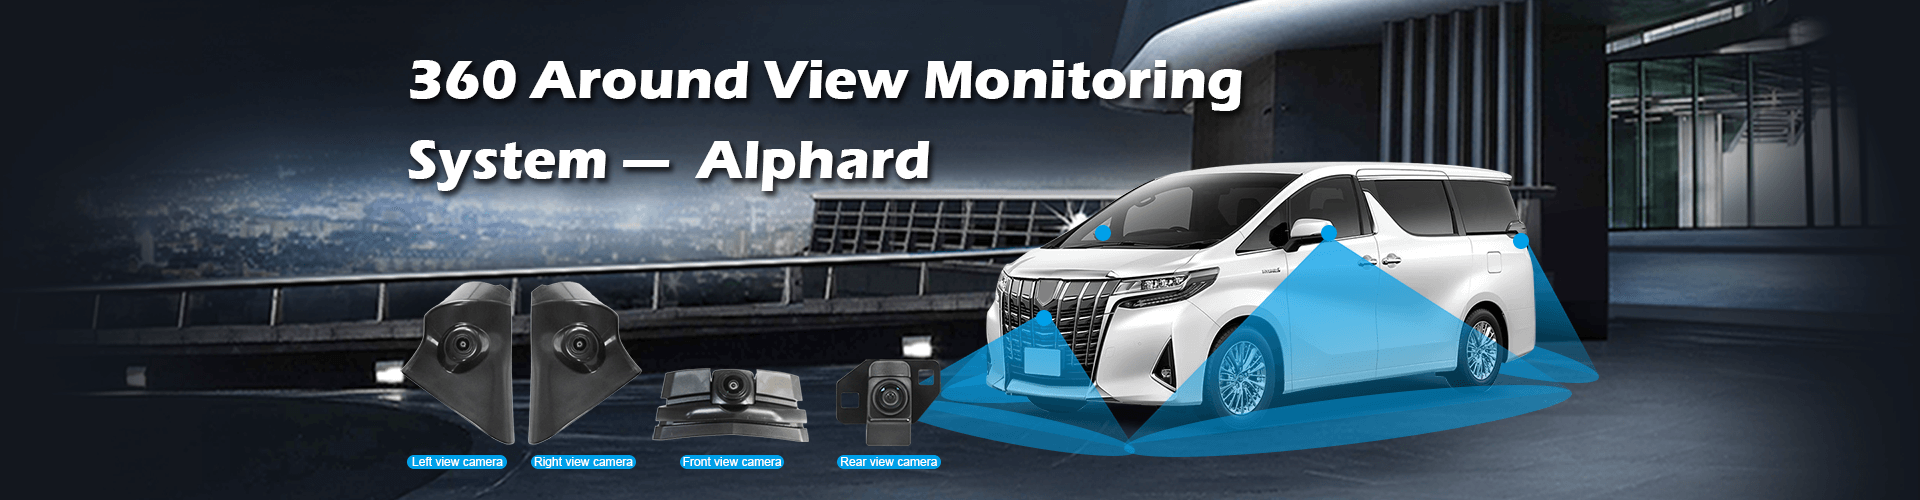 Sistema de monitoreo de vista alrededor de 360 para vehículos específicos Alphard